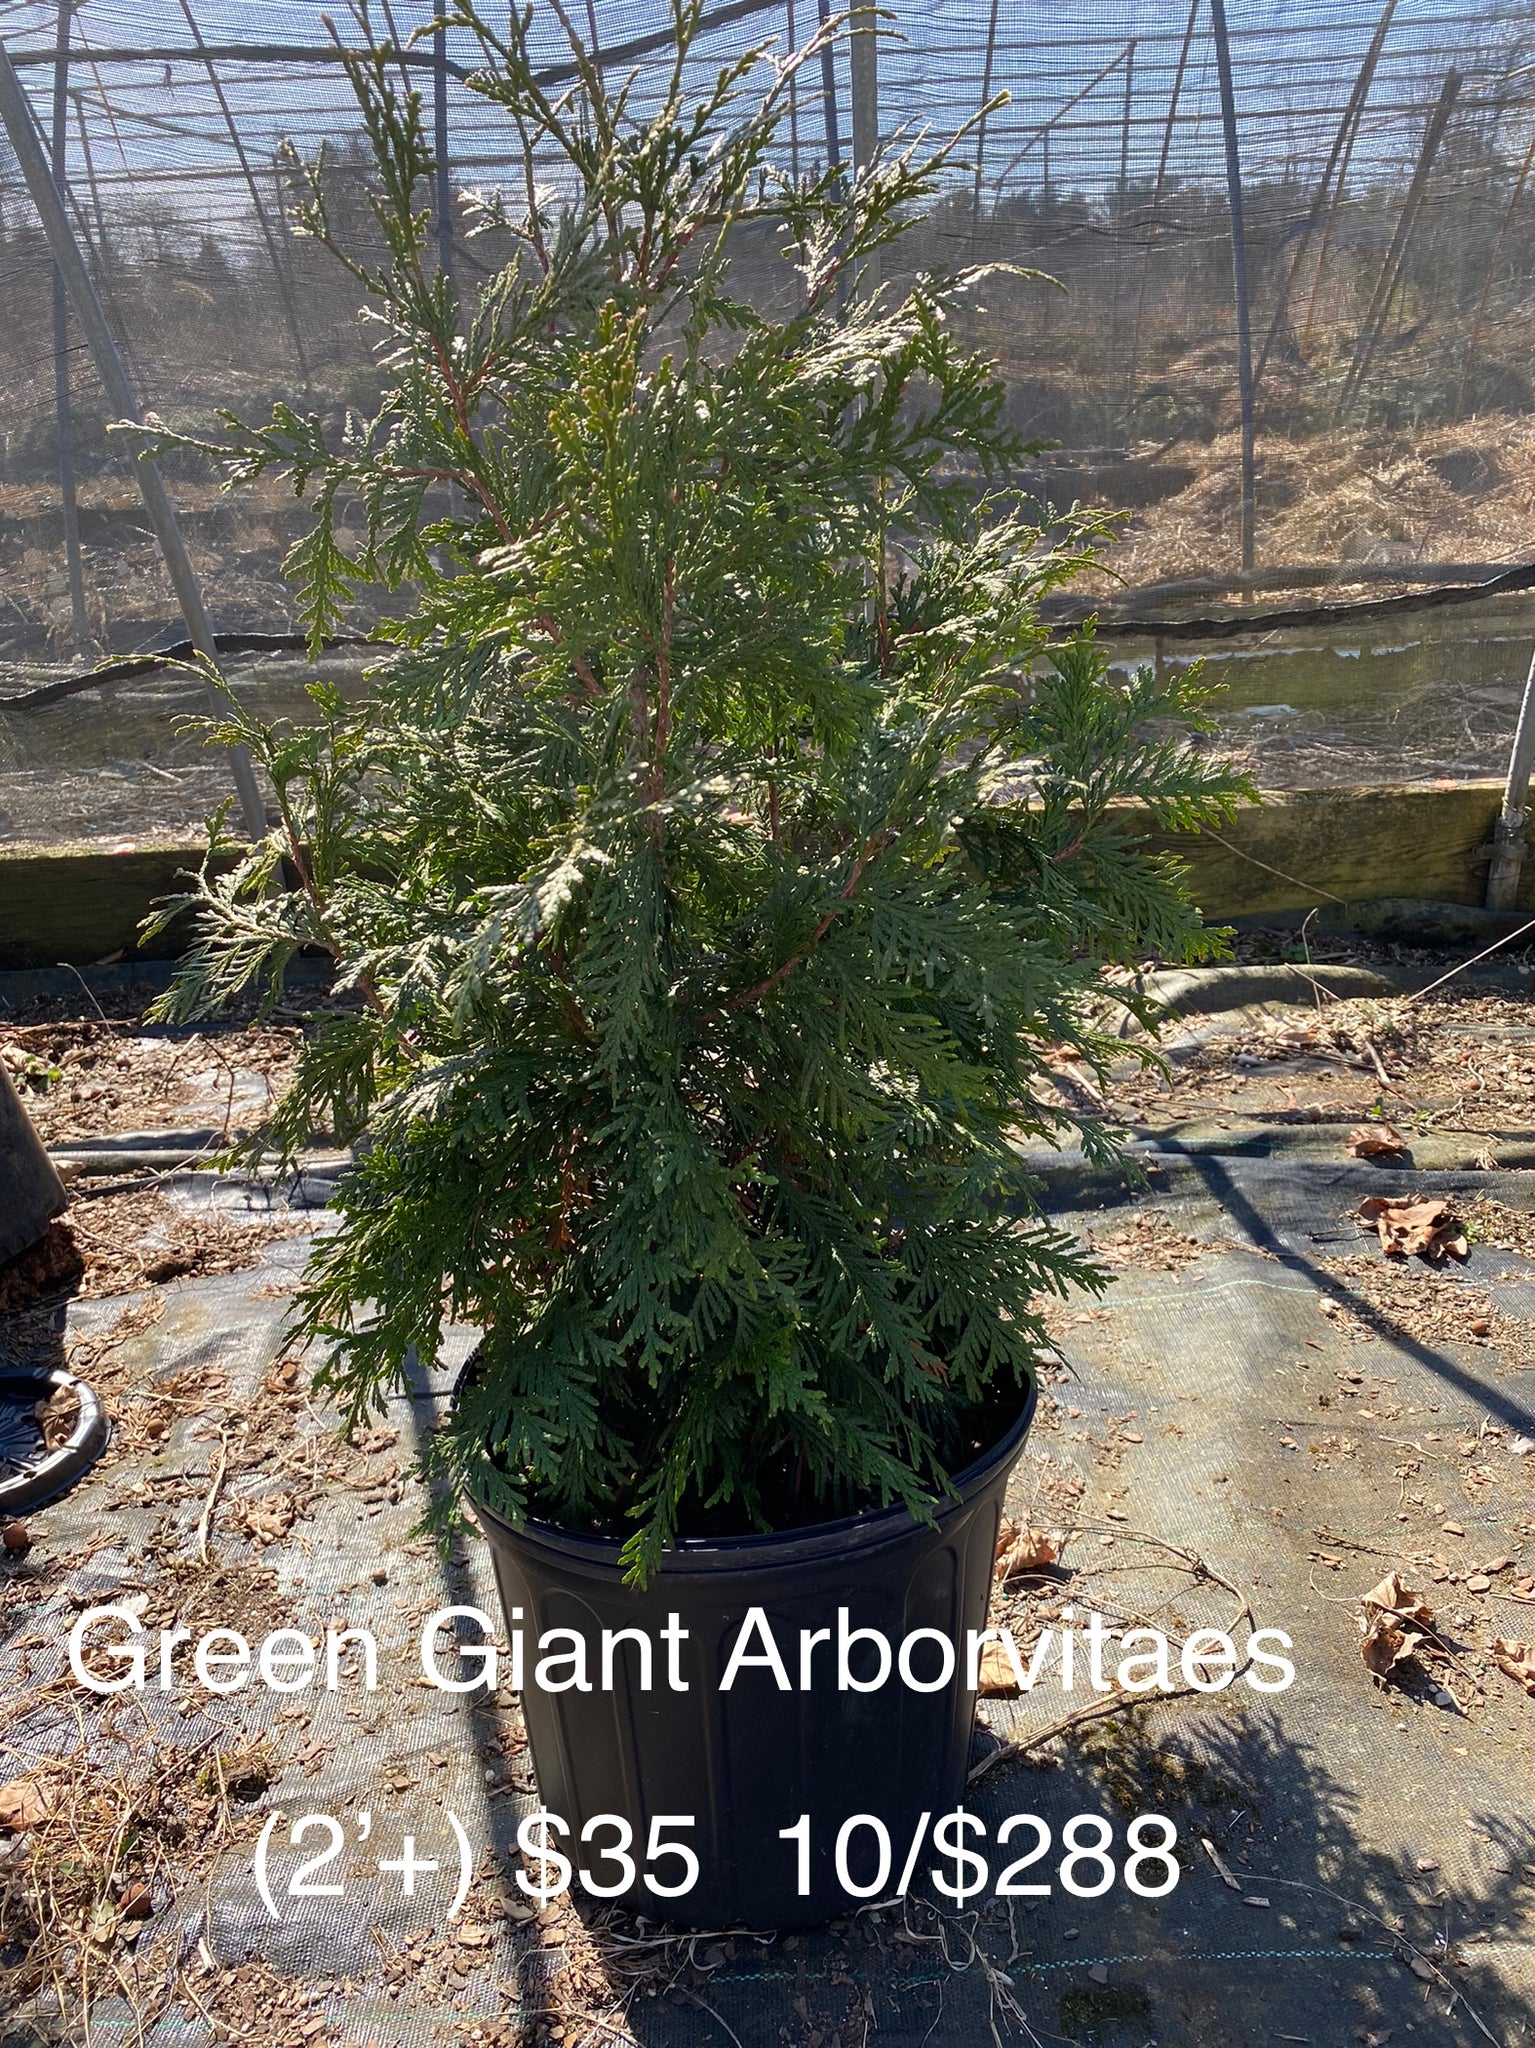 Green Giant Arborvitaes